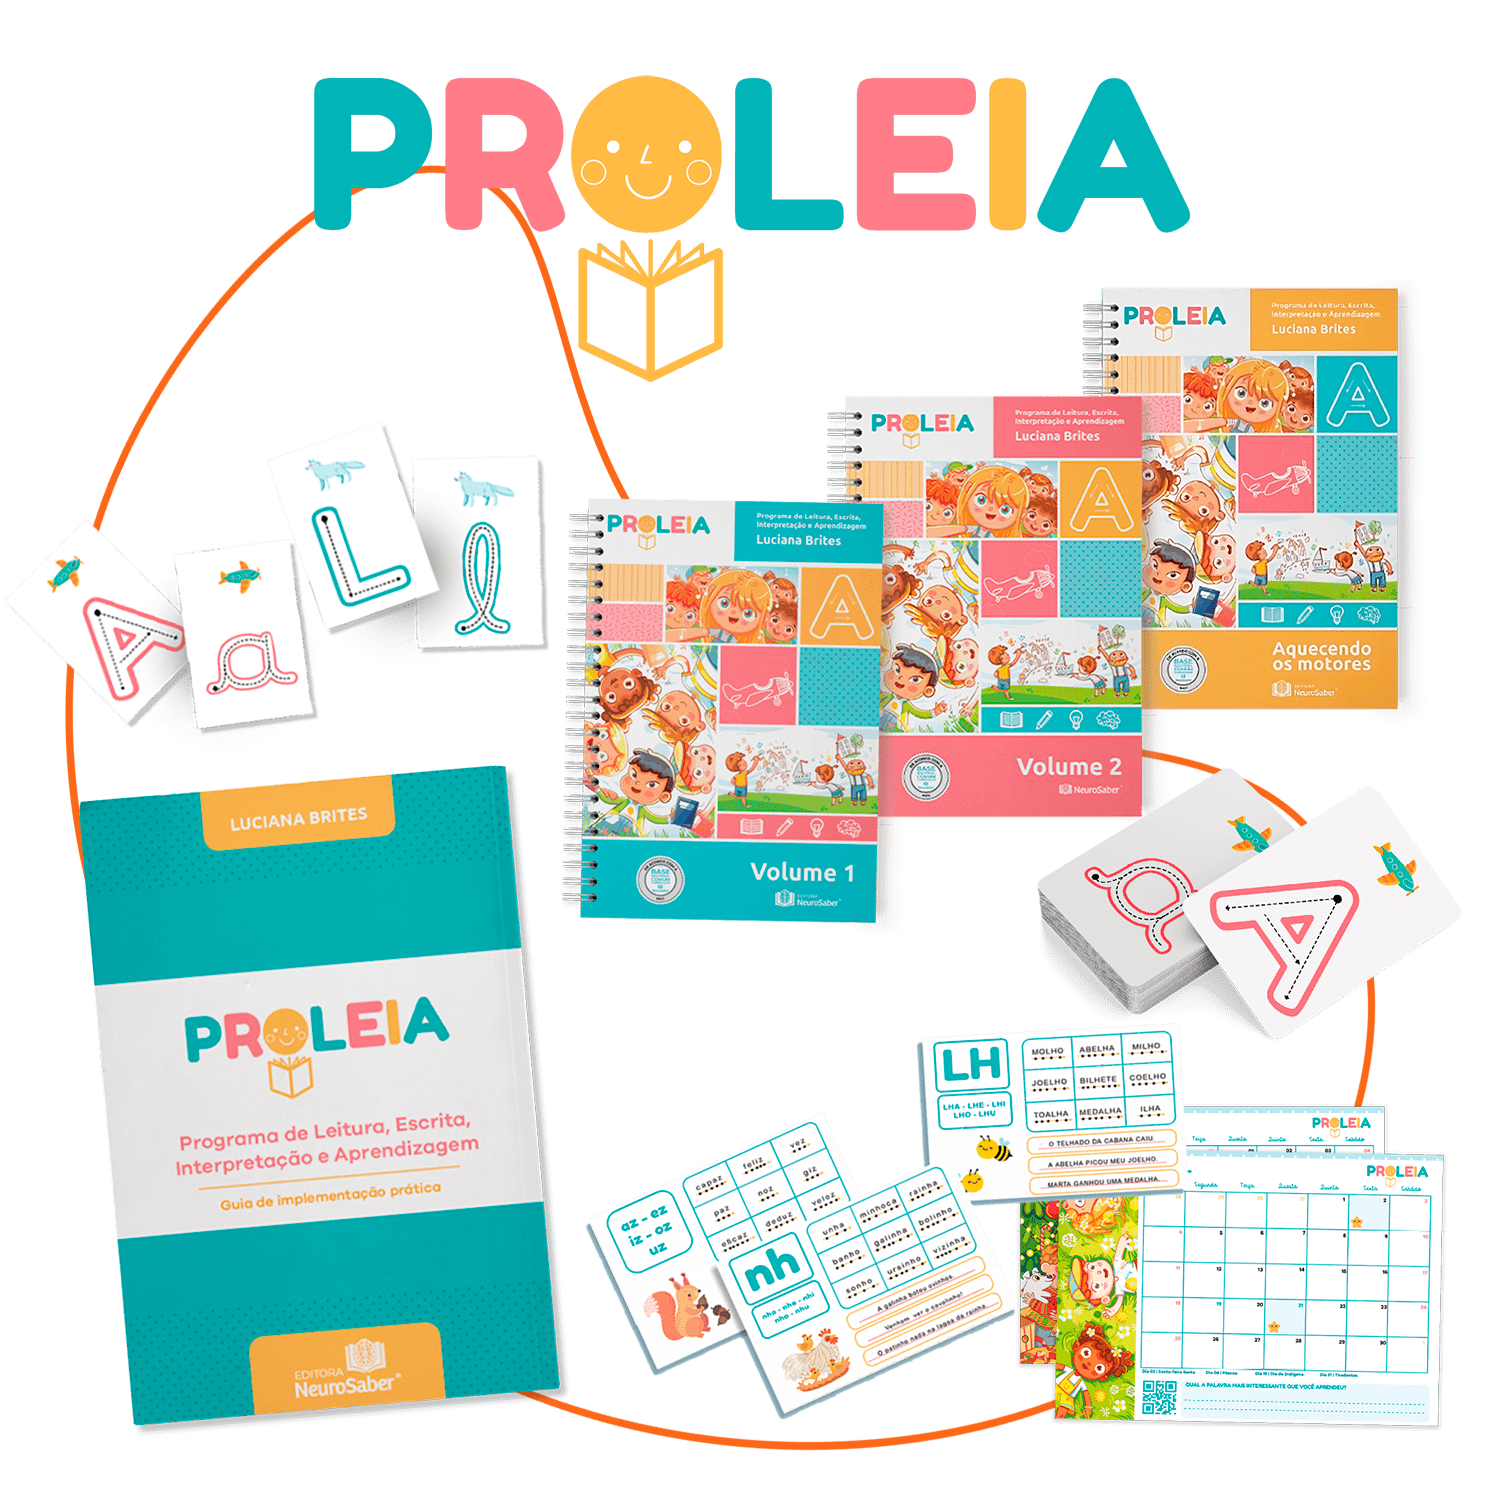 Proleia, Programa de Leitura, Escrita, Interpretação e Aprendizagem (Proleia) é indicado para crianças a partir de 6 anos, no início do processo de alfabetização ou com alguma dificuldade de aprendizagem